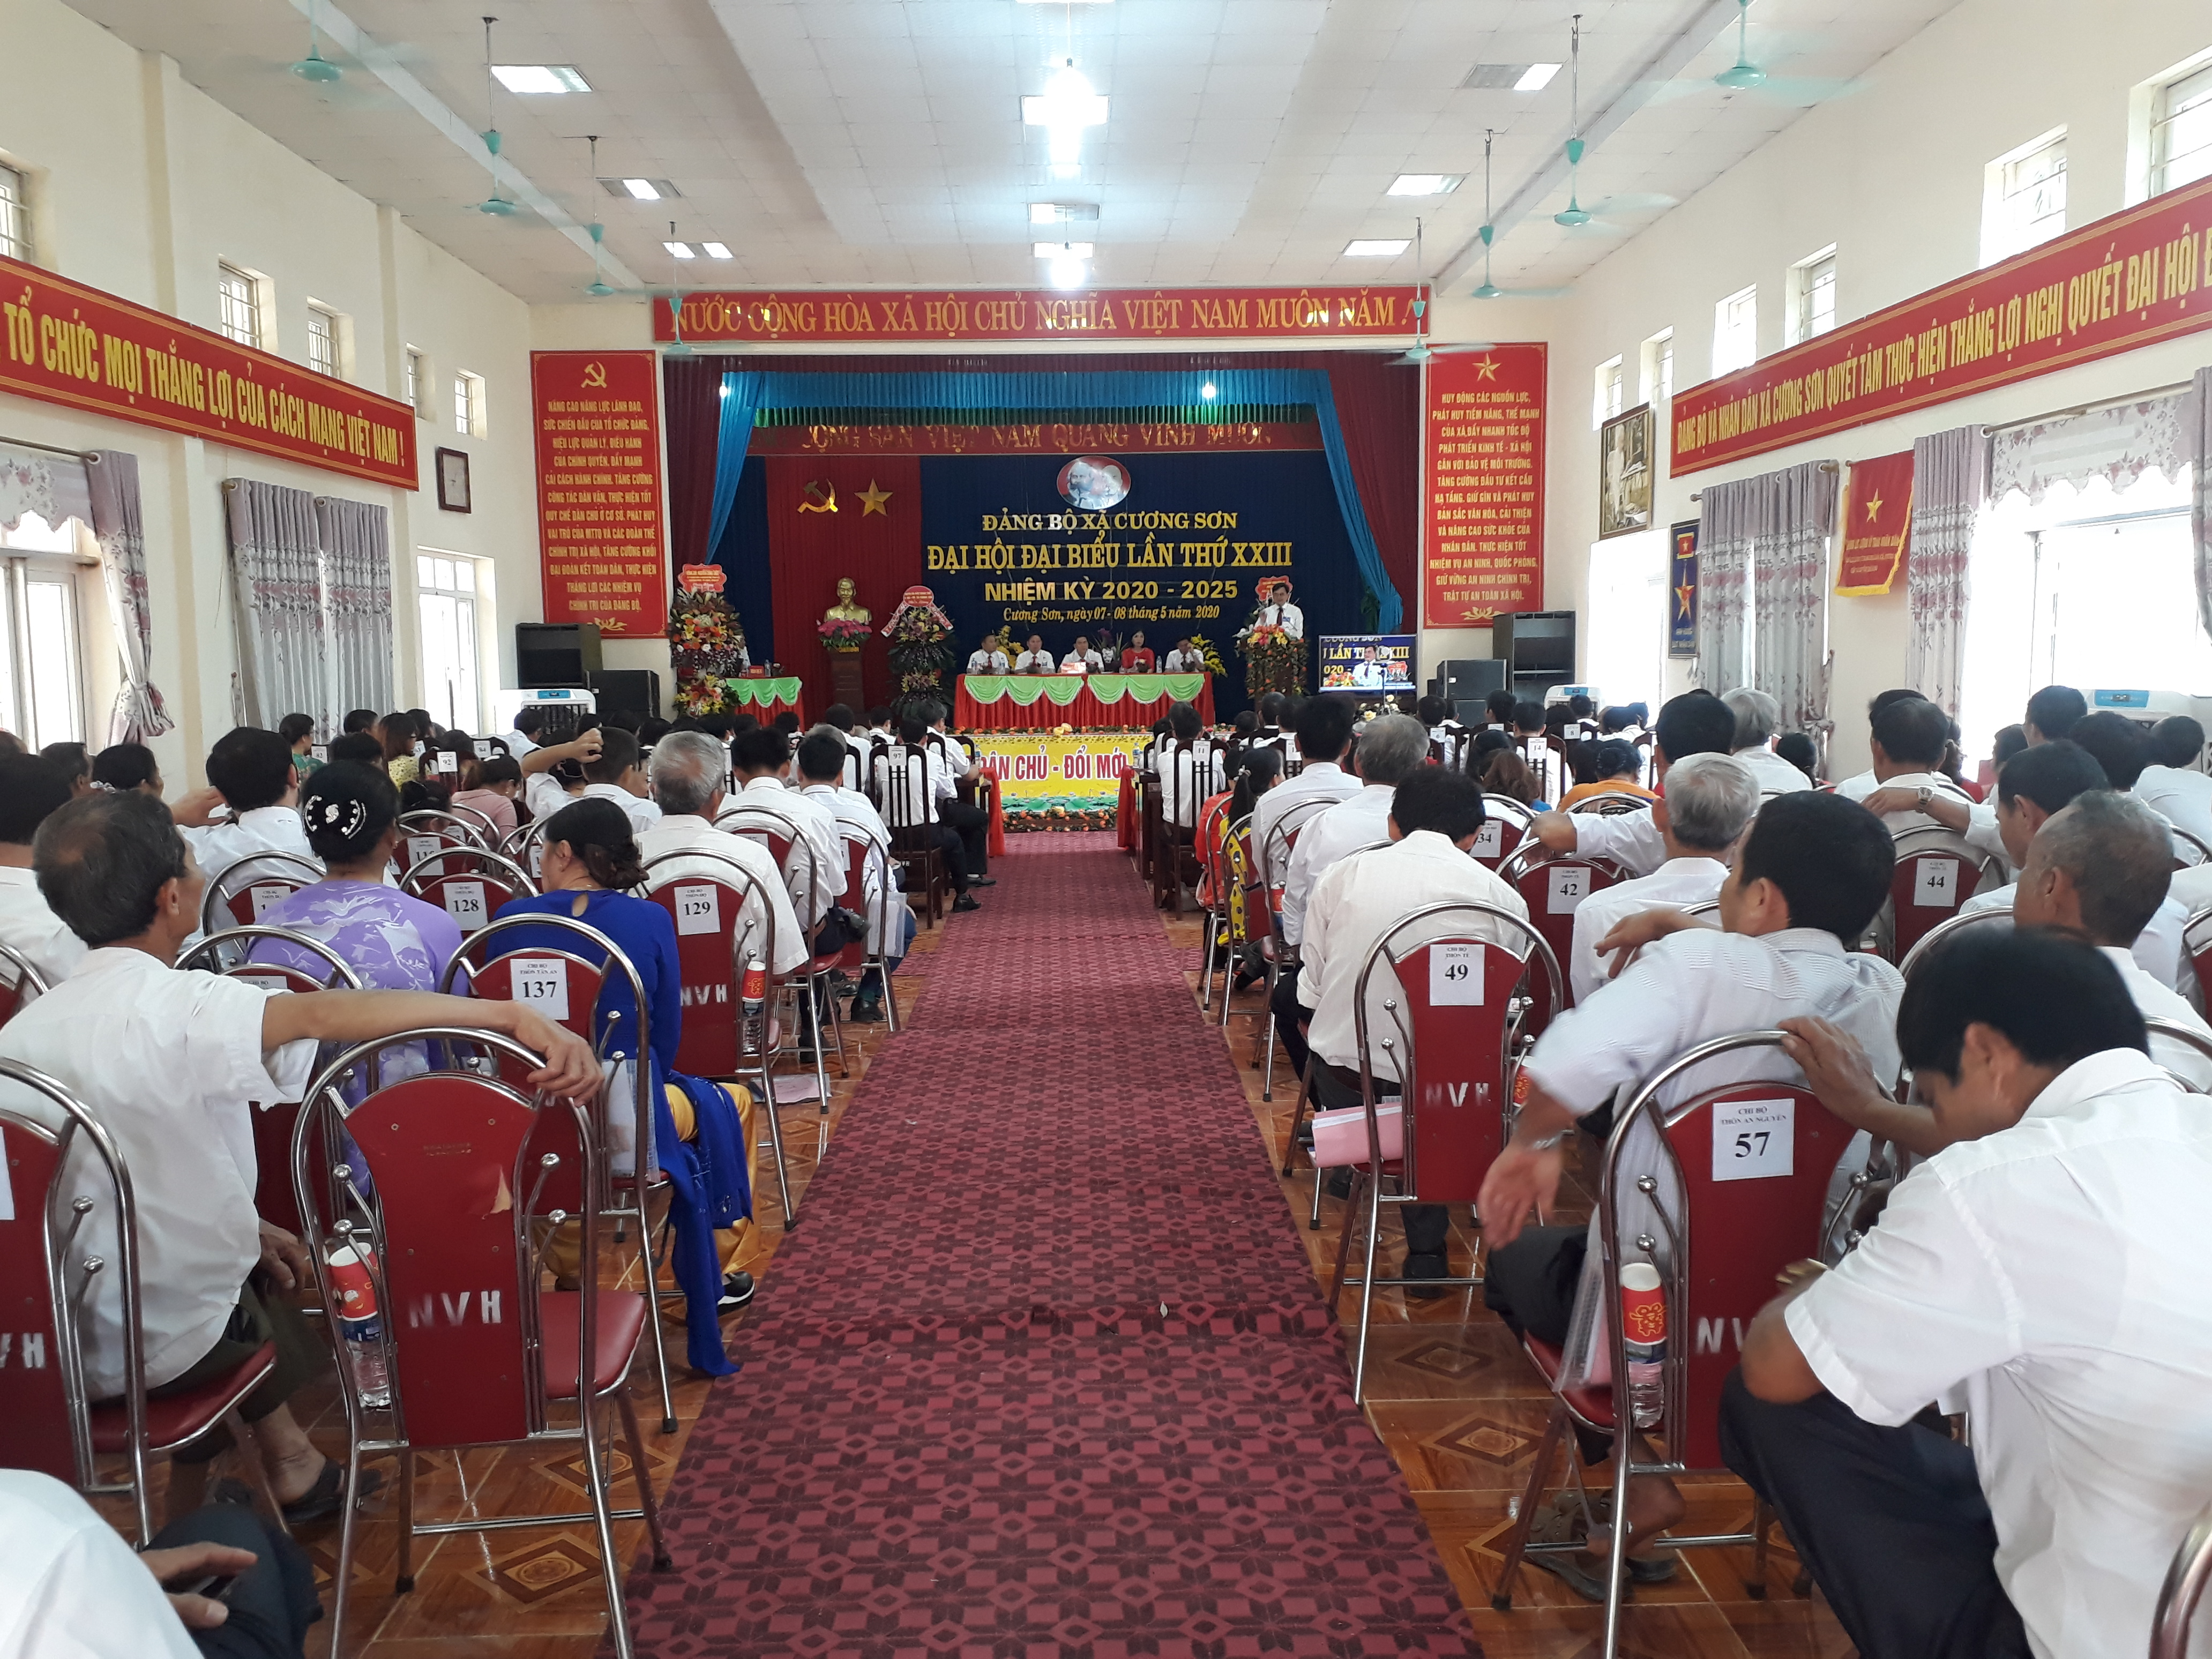 Đảng bộ xã Cương Sơn tổ chức Đại hội đại biểu,nhiệm kỳ 2020-2025